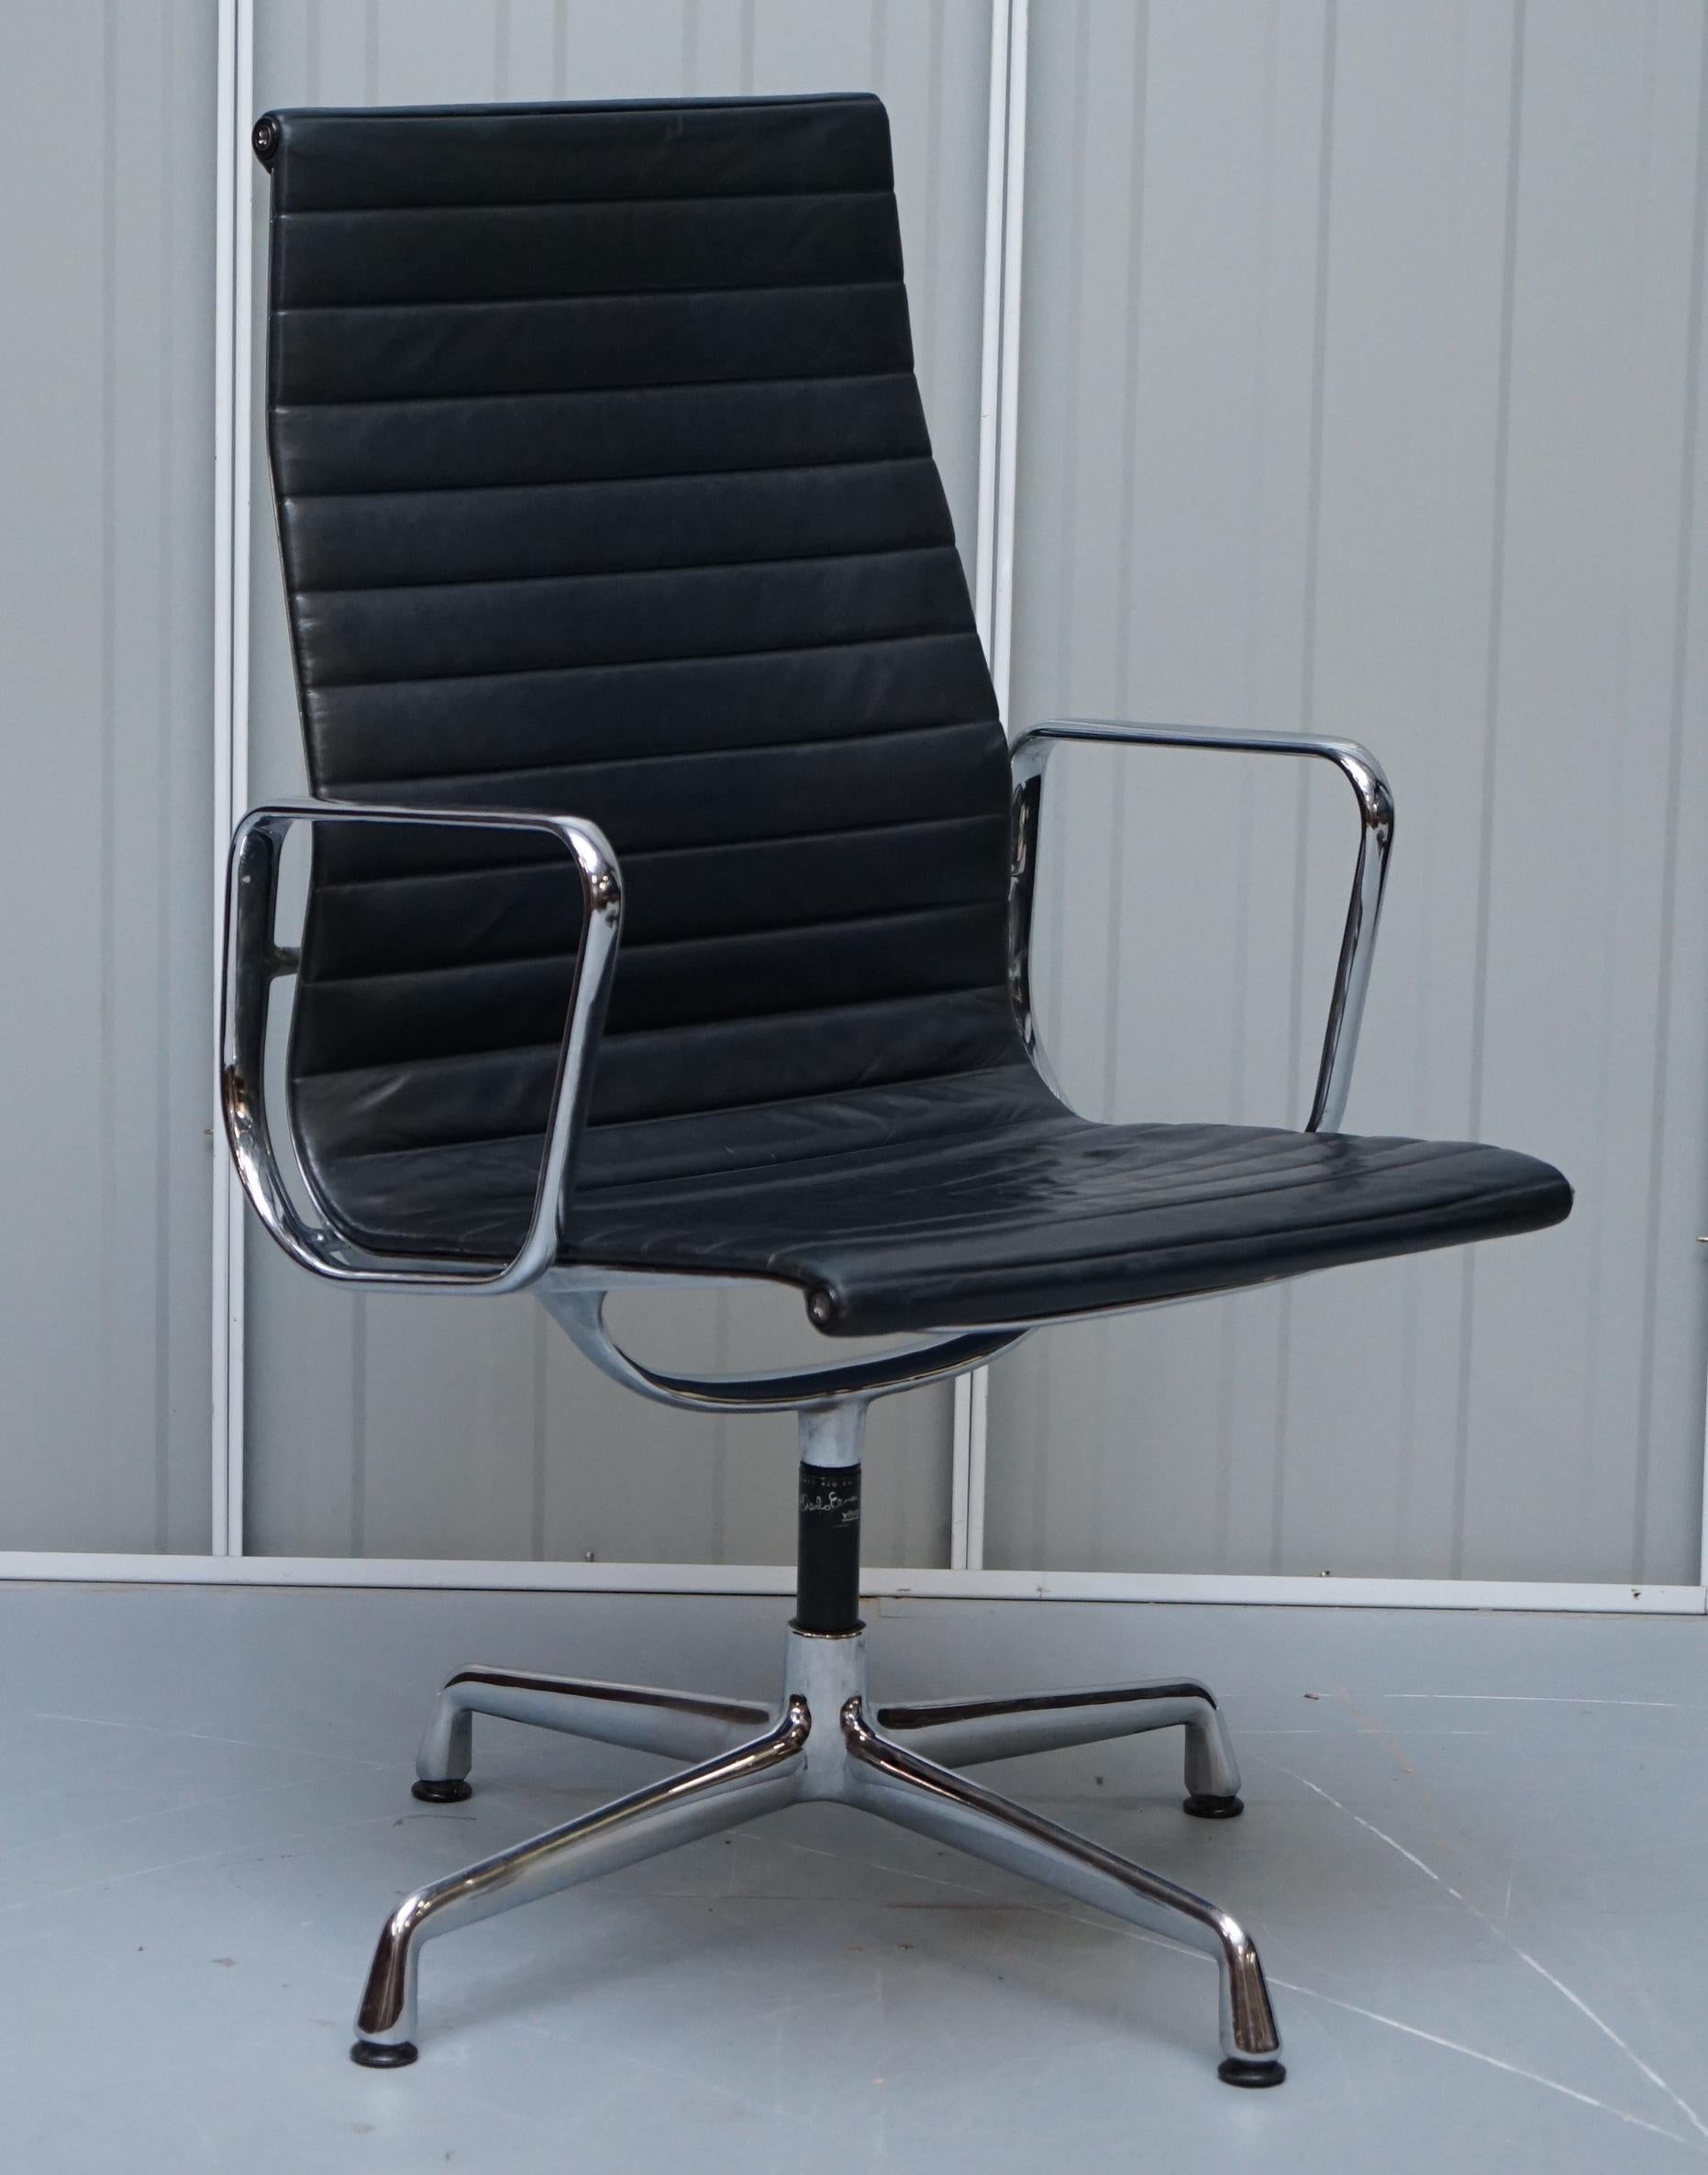 Nous avons le plaisir d'offrir à la vente 1 des 10 fauteuils de bureau pivotants en cuir noir à haut dossier de Charles & Rays Eames, Vitra, Herman Miller. Prix conseillé : 34 000 euros.

Ces chaises sont à peu près aussi emblématiques et connues